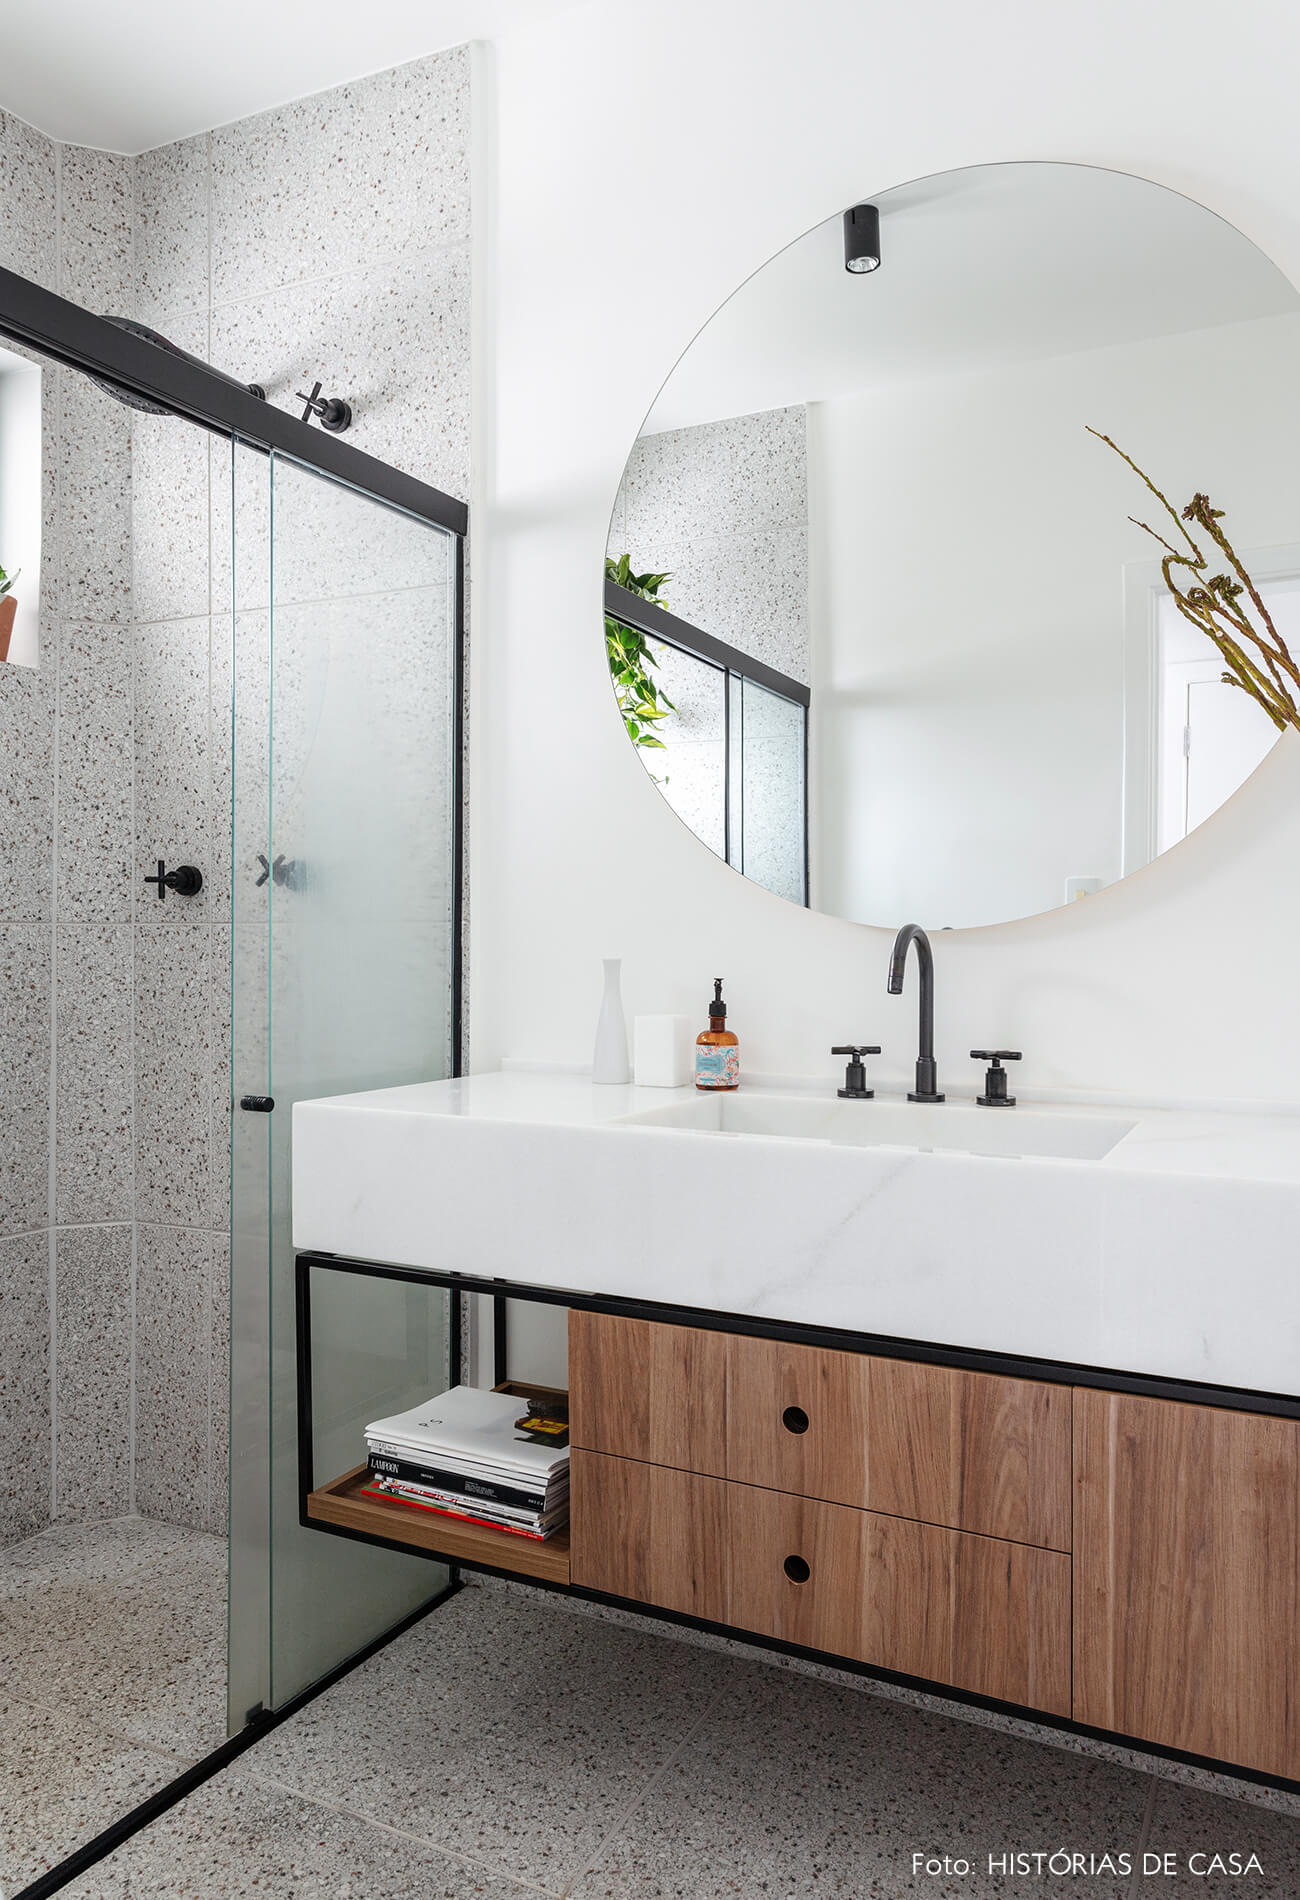 Apartamento escandinavo, banheiro com espelho redondo e tons sóbrios